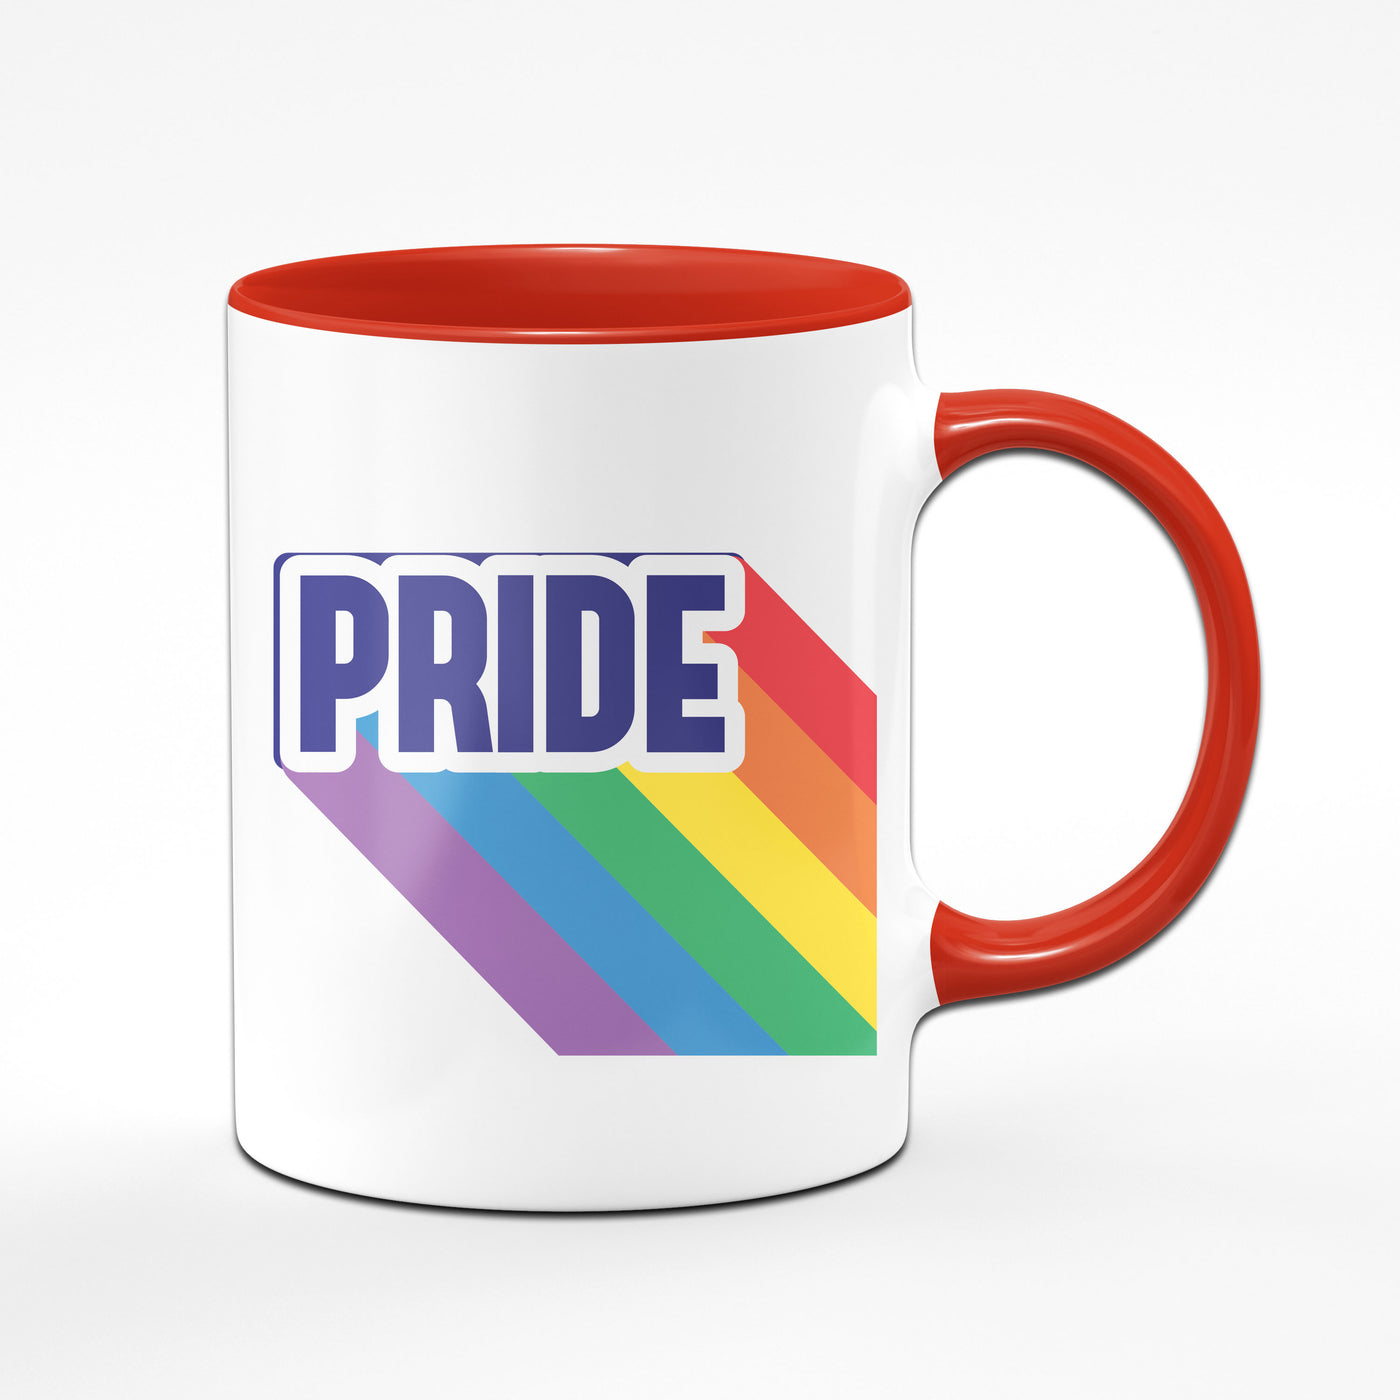 Bild: Tasse - Pride mit Regenbogenflagge Geschenkidee